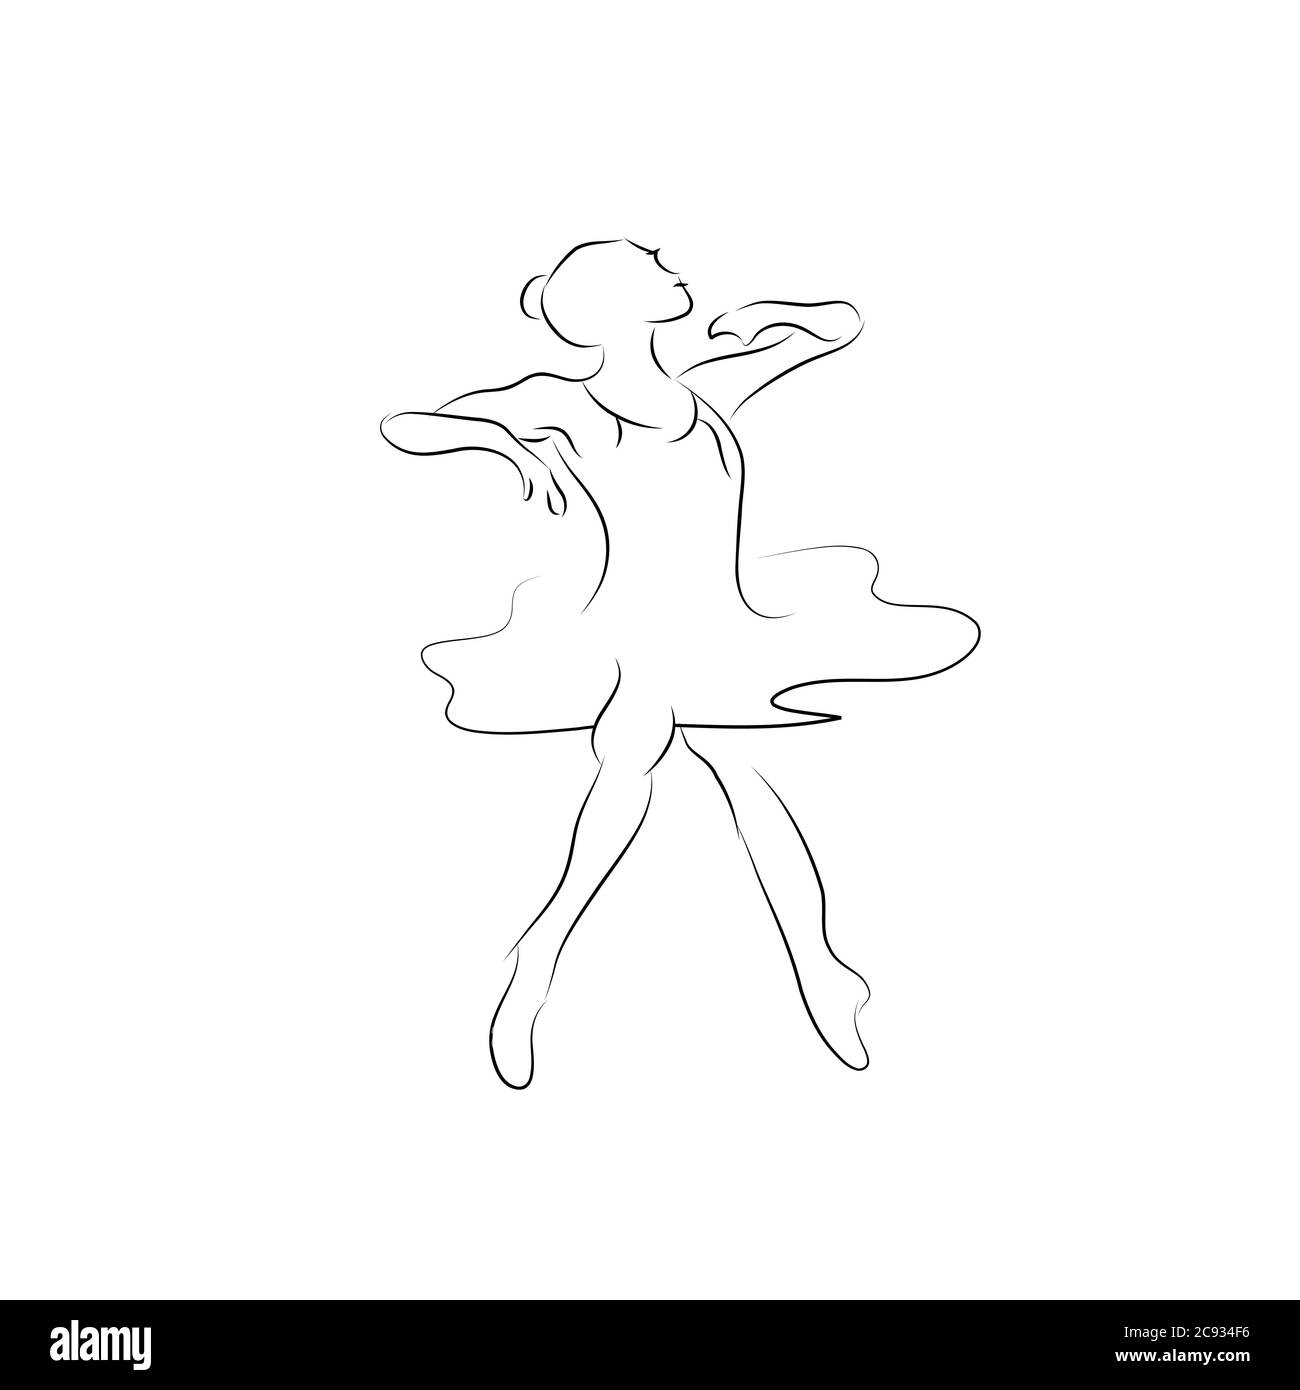 Illustration des danseurs. Ensemble de logos Dancing People. Tango. Collection vectorielle de personnes abstraites dans les poses dansantes.vous pouvez utiliser dans la danse, spa, yoga, sport Illustration de Vecteur